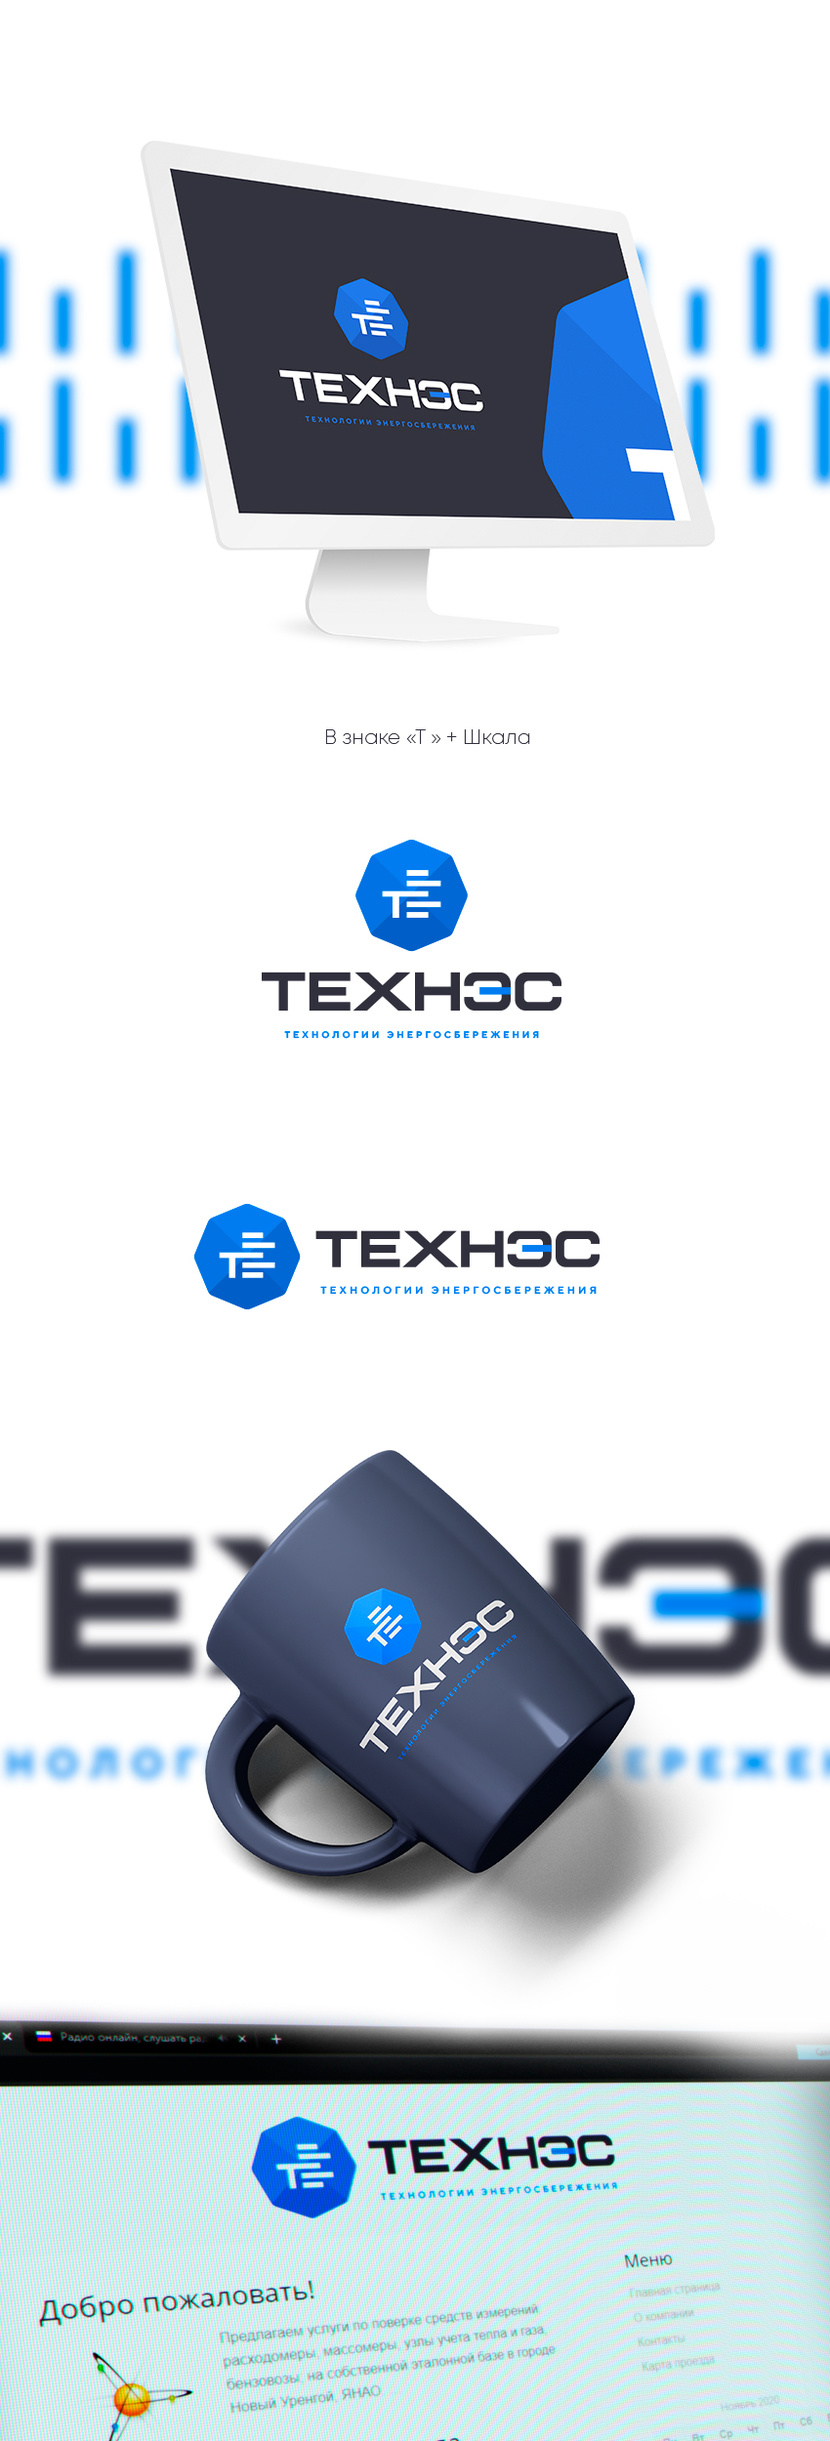 + - Создание логотипа и фирменного стиля